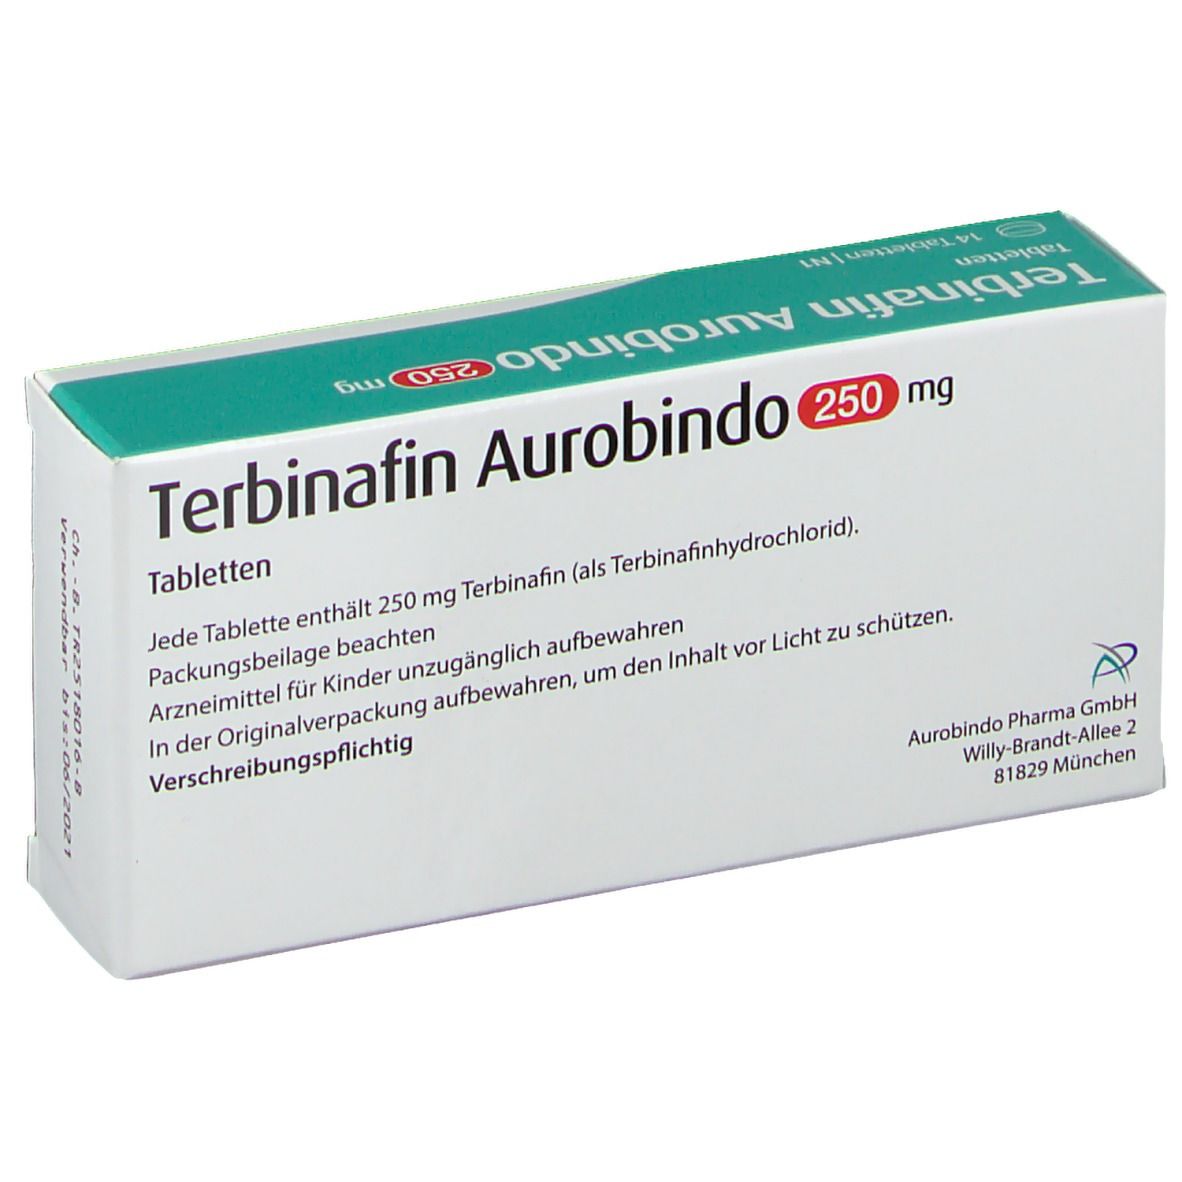 Terbinafin Aurobindo 250 mg